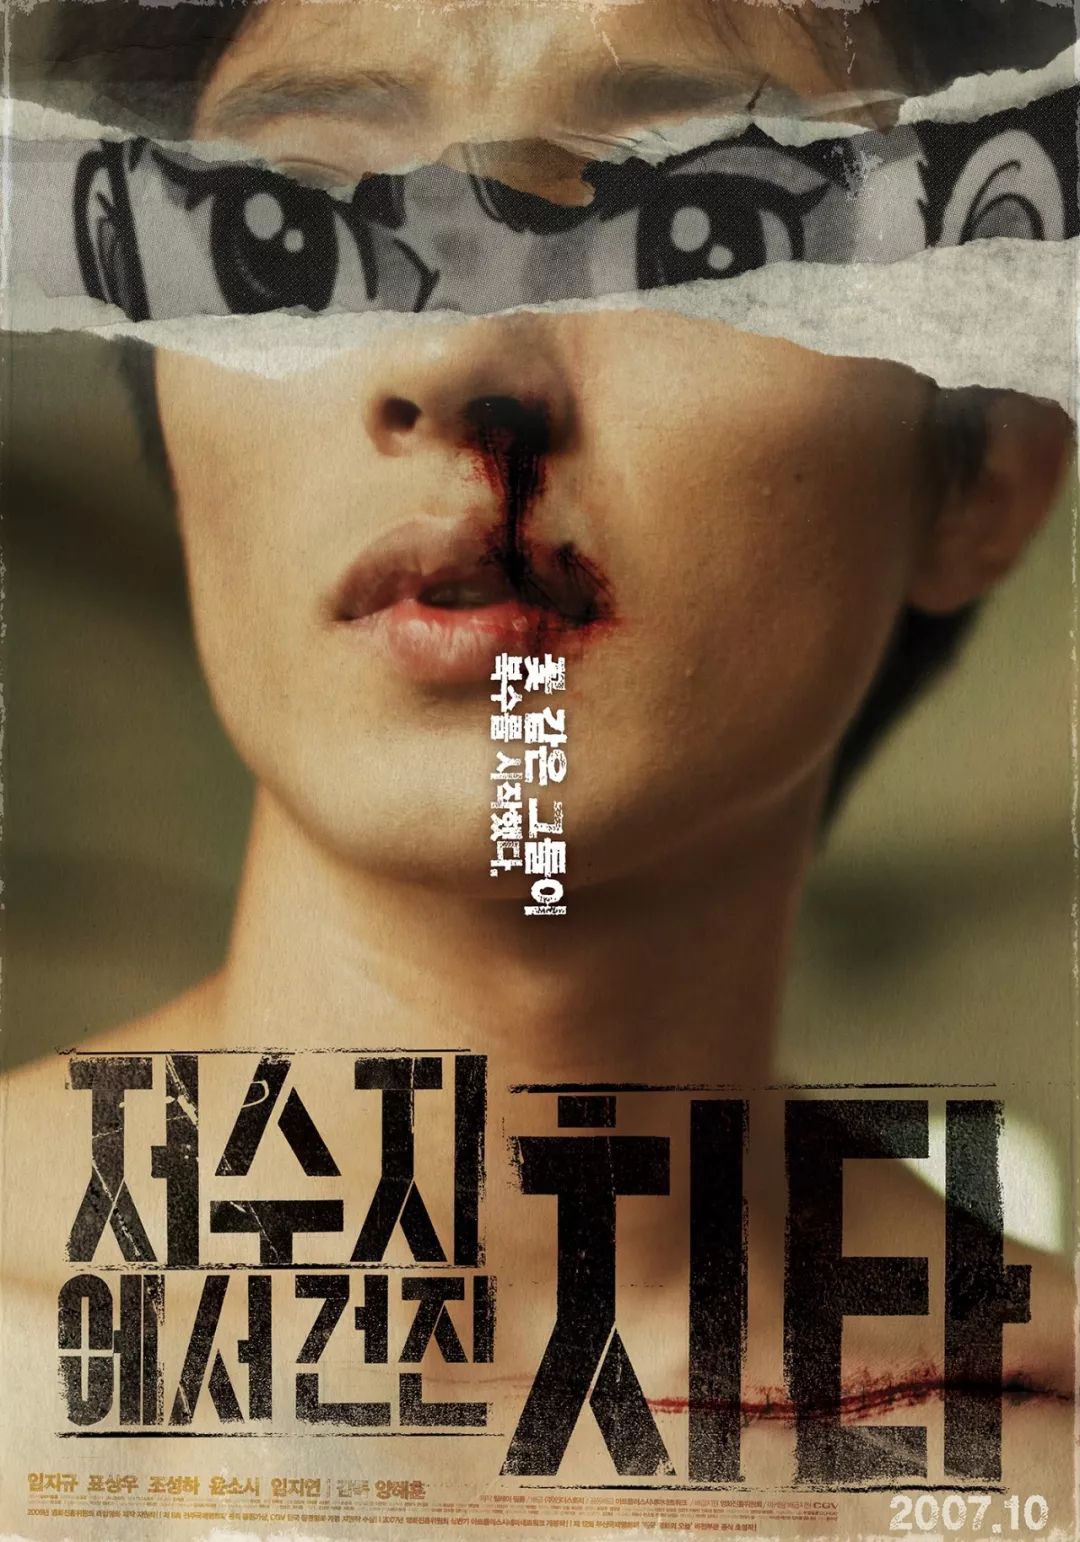 韩国设计师Park siyoung电影海报作品集